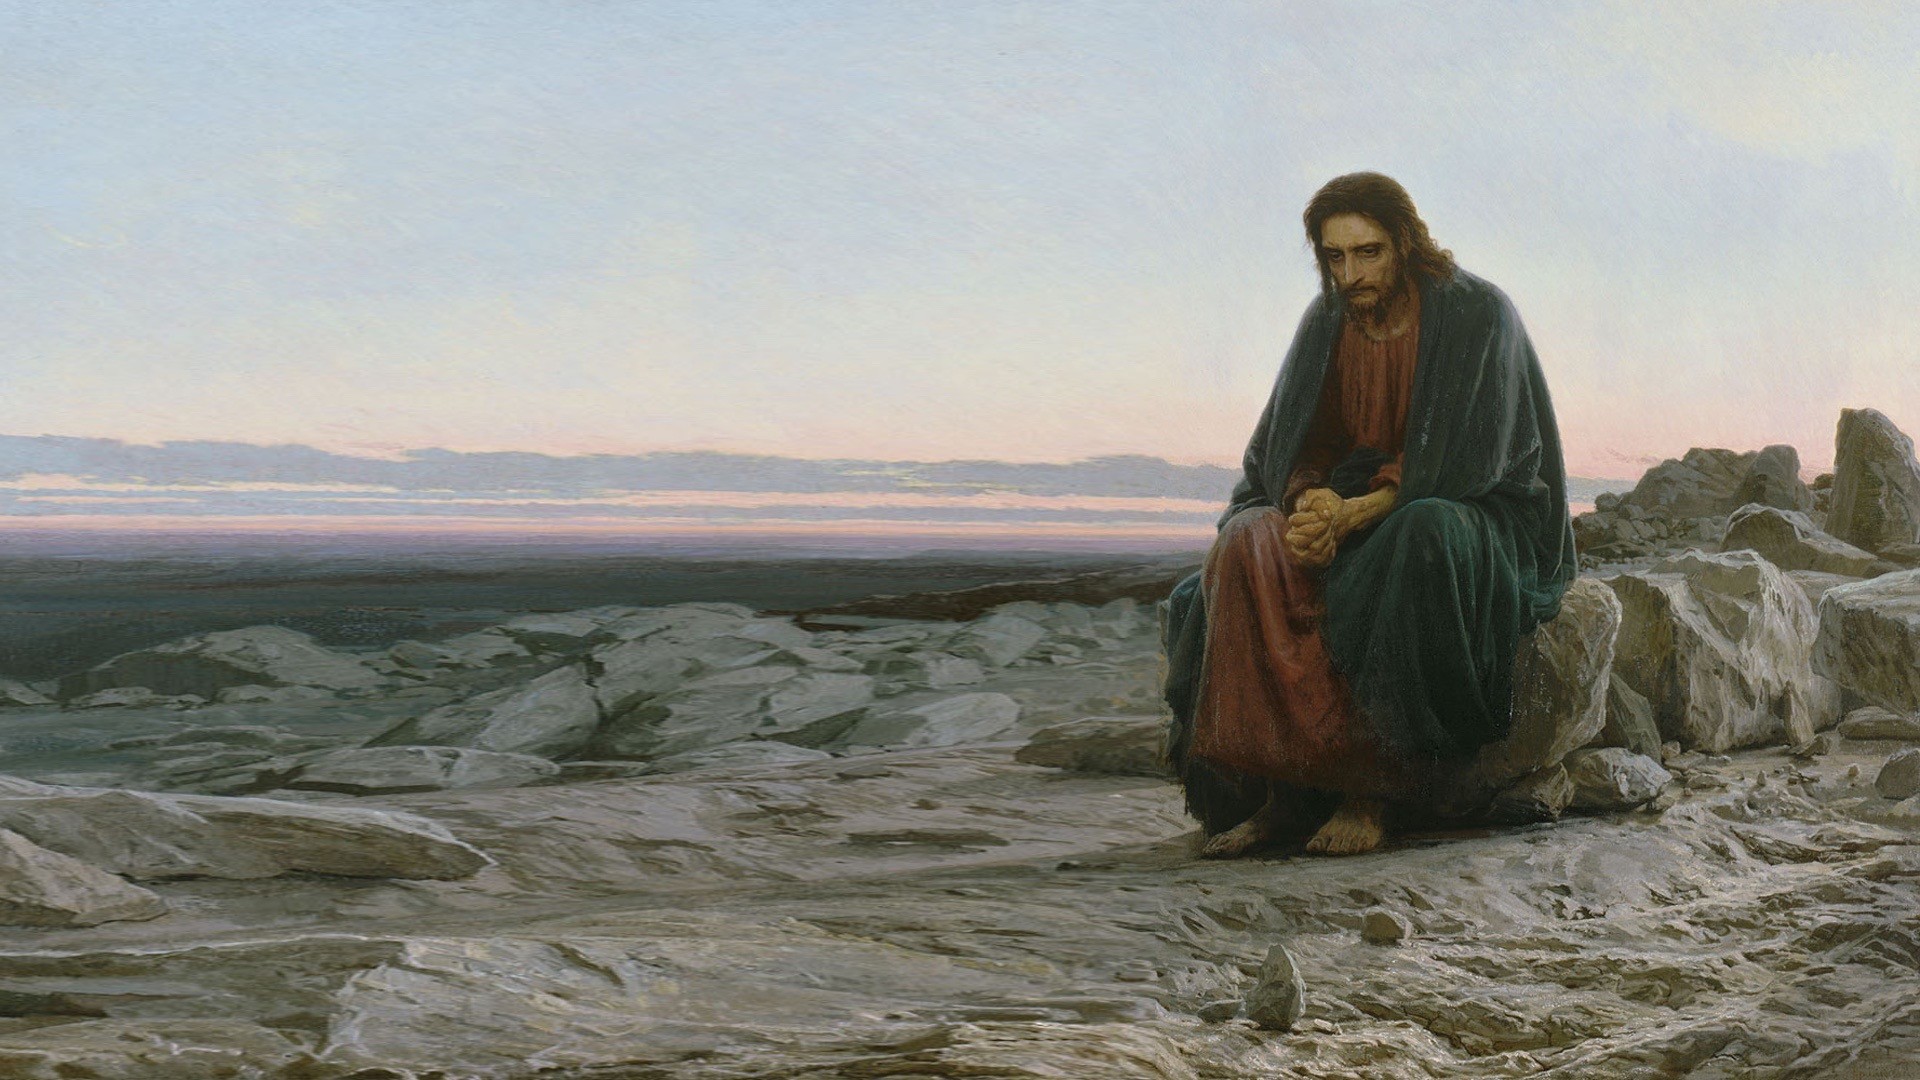 Ivan Kramskoy, Sitting, Barefoot, Artwork, Classic art, Painting, Jesus Christ, Sadness, Alone, Rock, Desert, Christianity, Religion Wallpaper